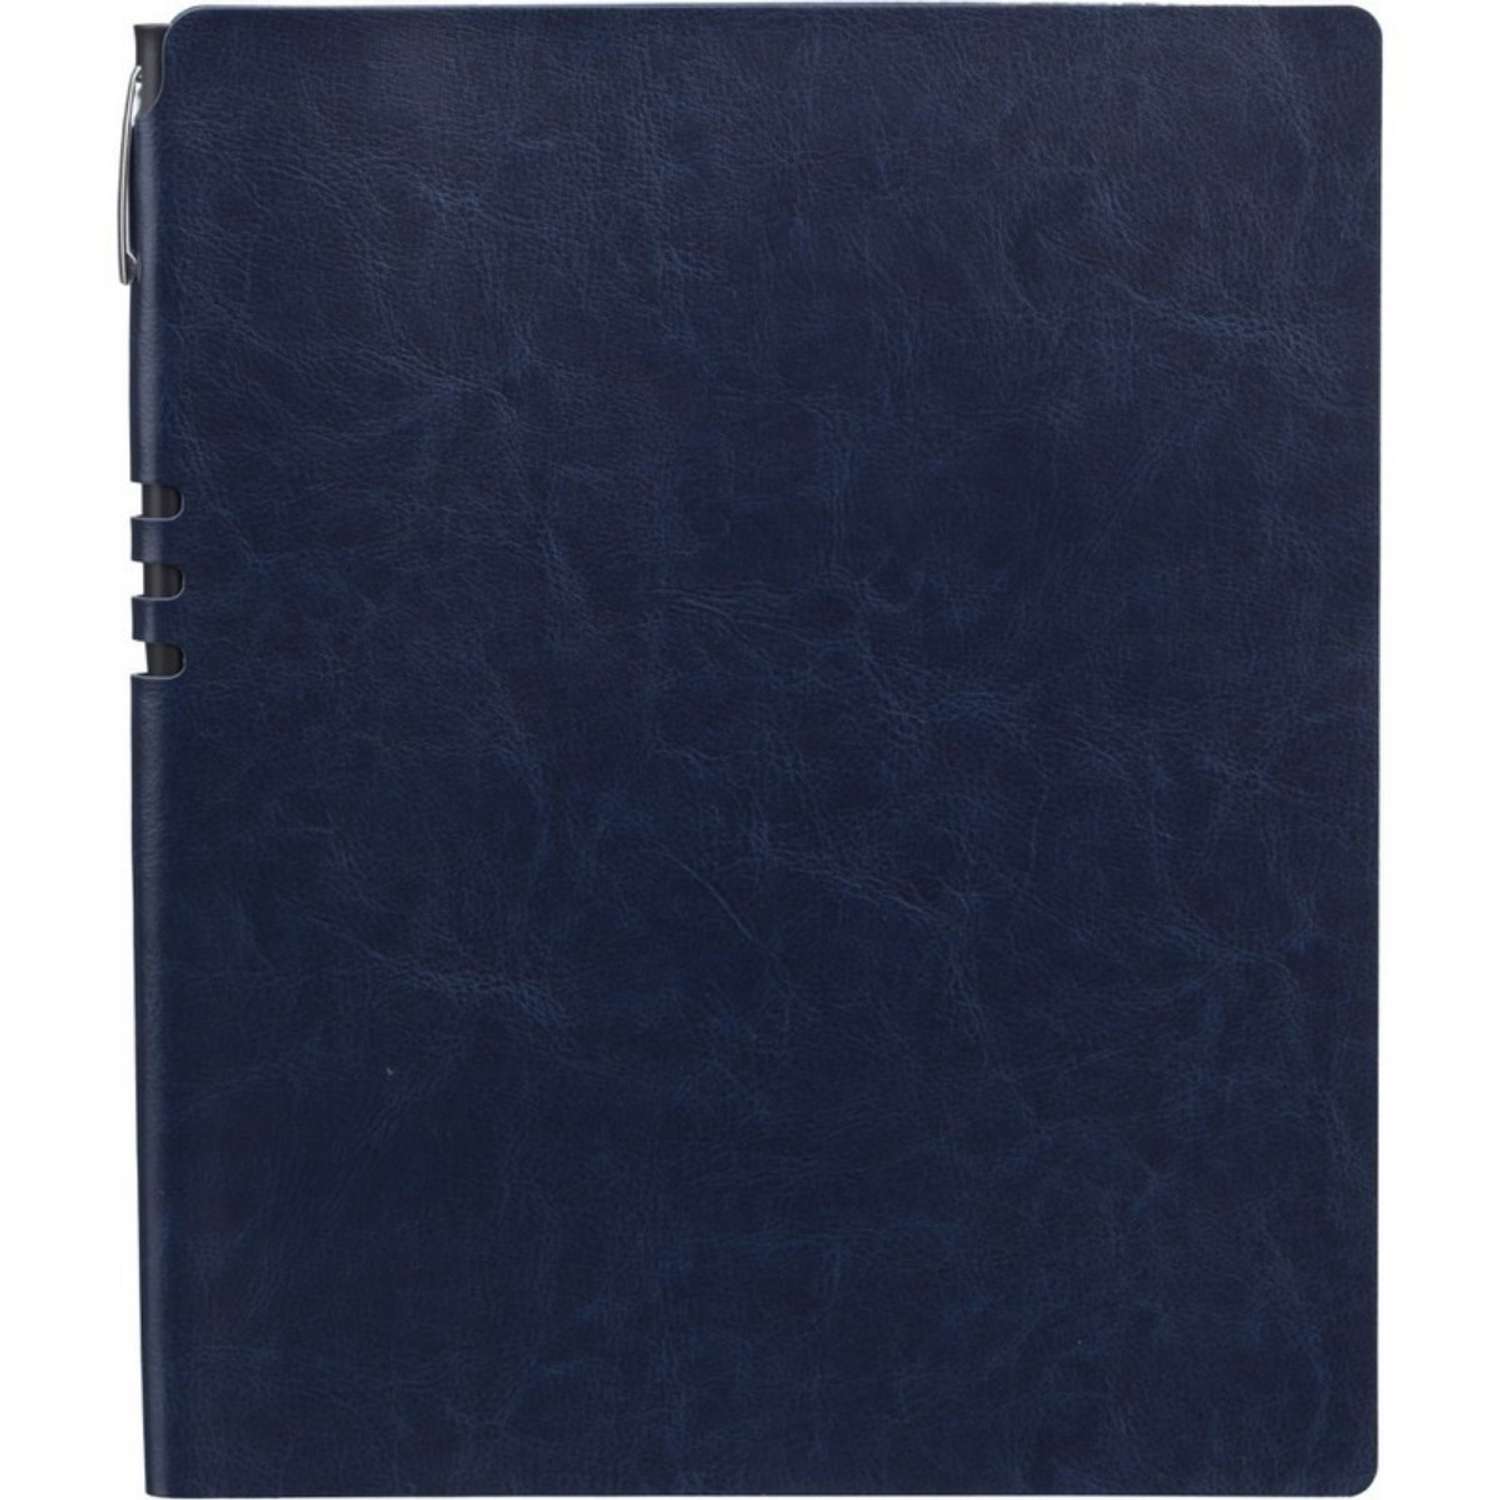 Бизнес-тетрадь Attache Light Book А4 96 листов клетка цветной срез кожзаменитель темно-синий - фото 1